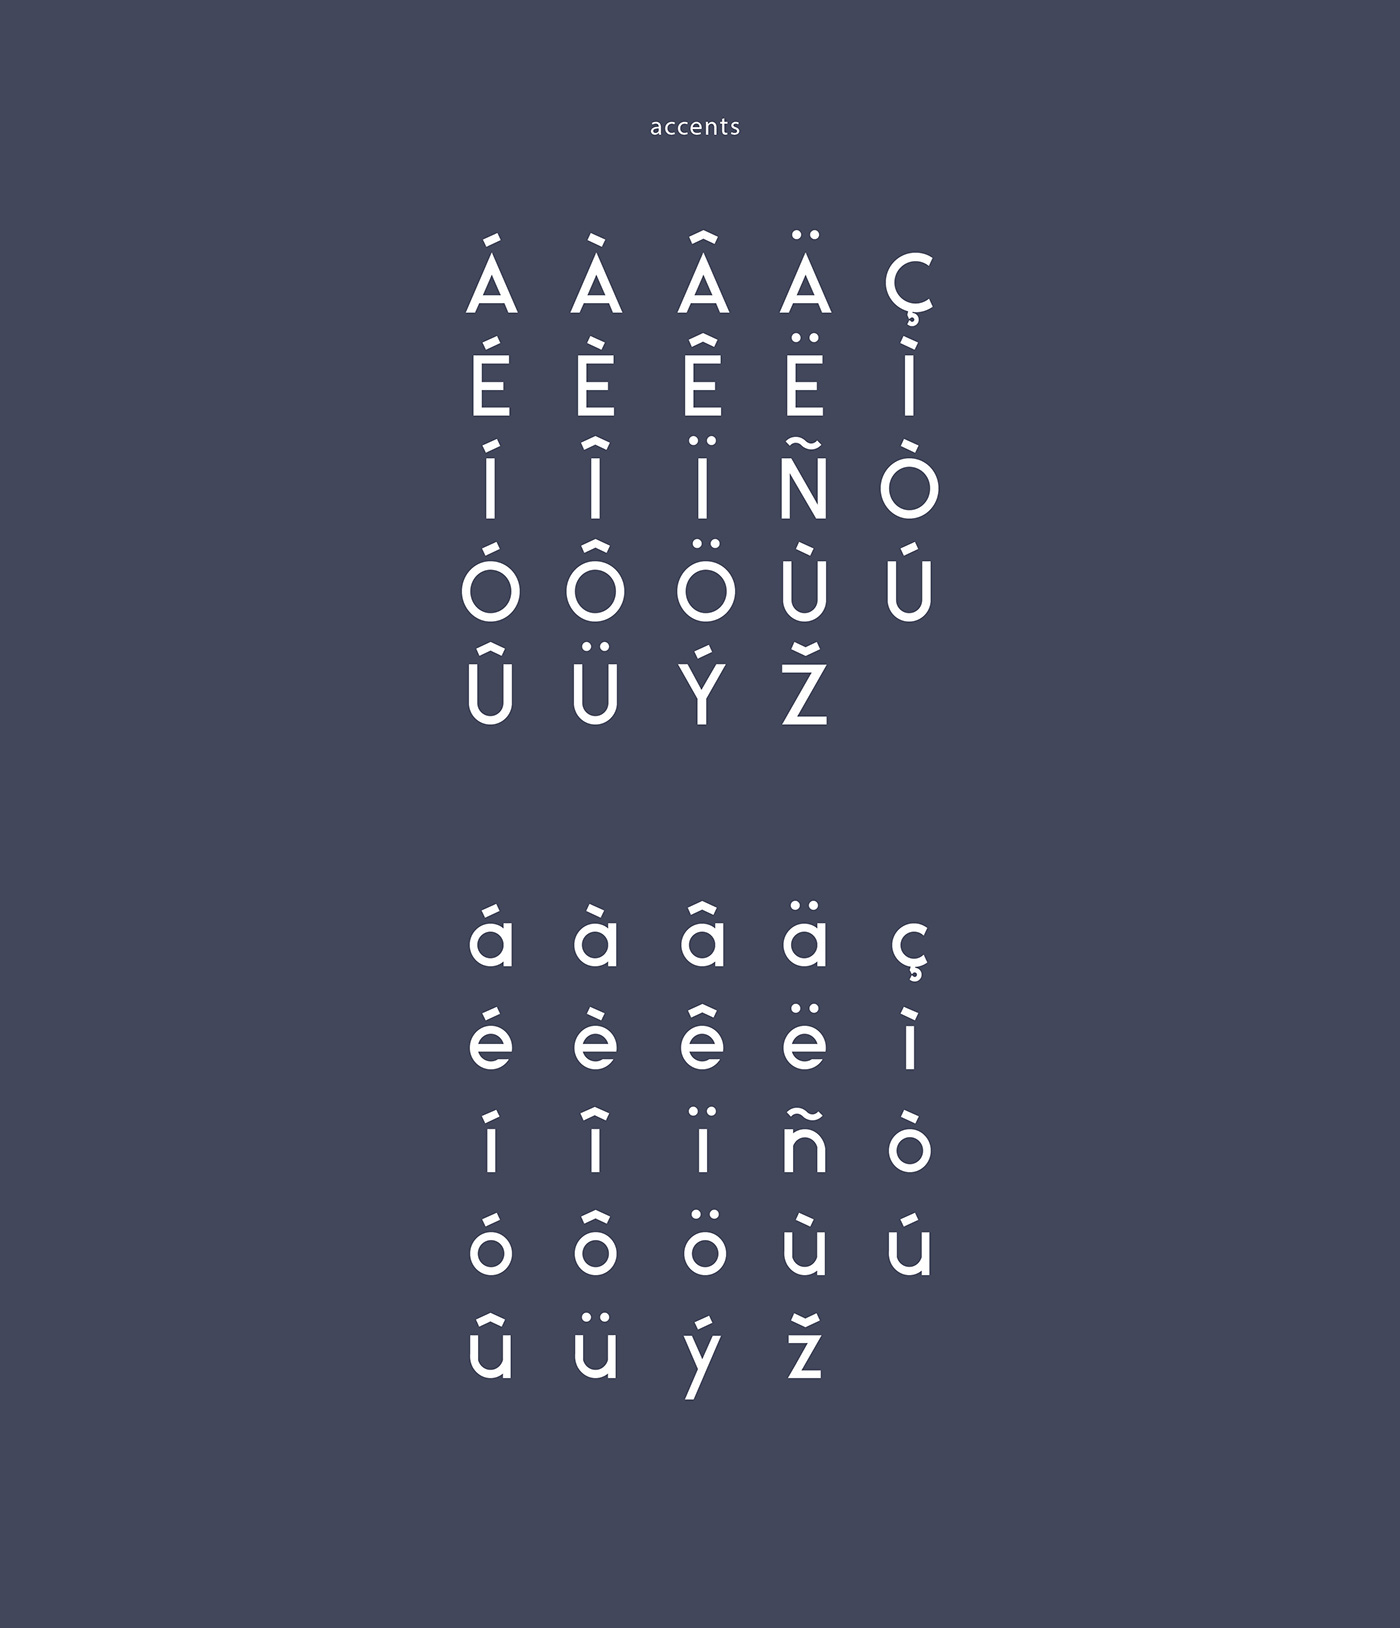 Ikaros Font